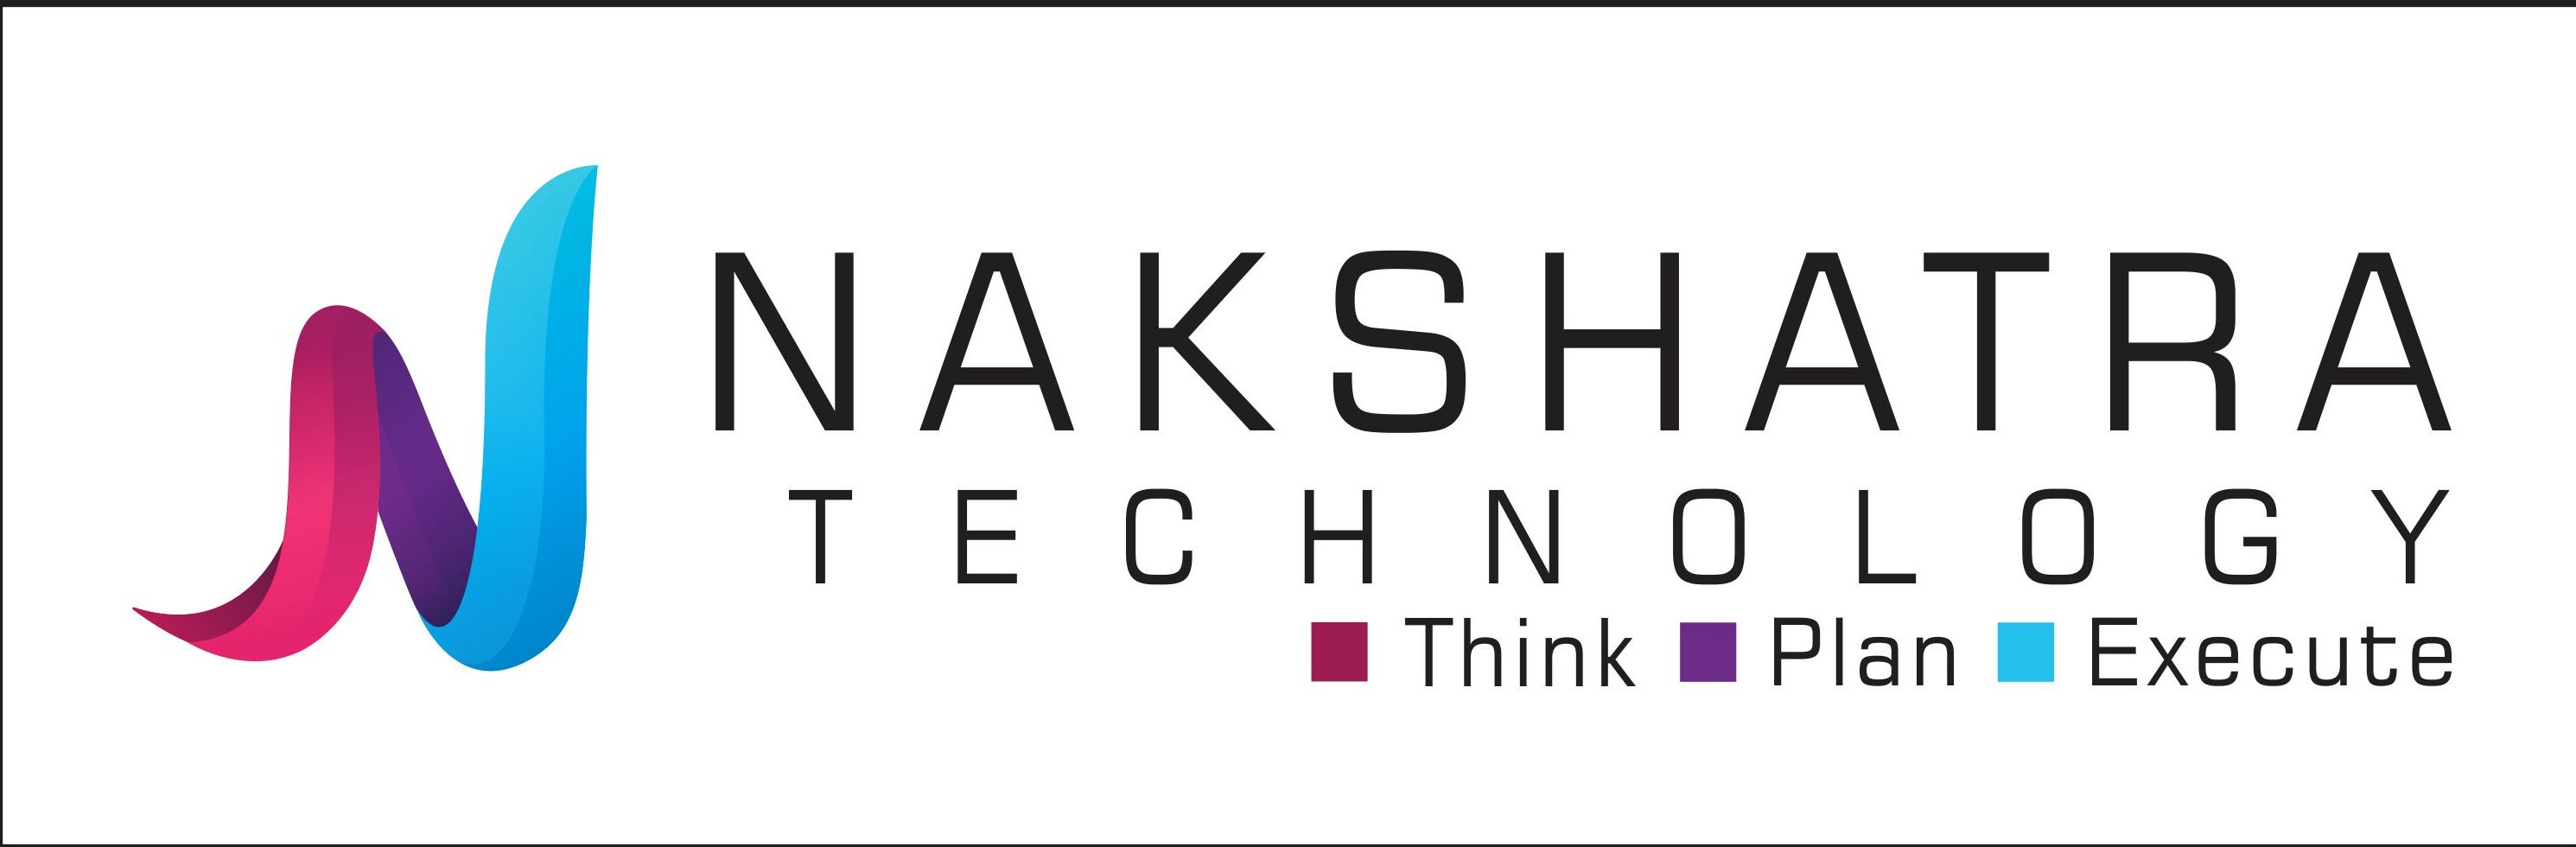 Nakshatra Technology